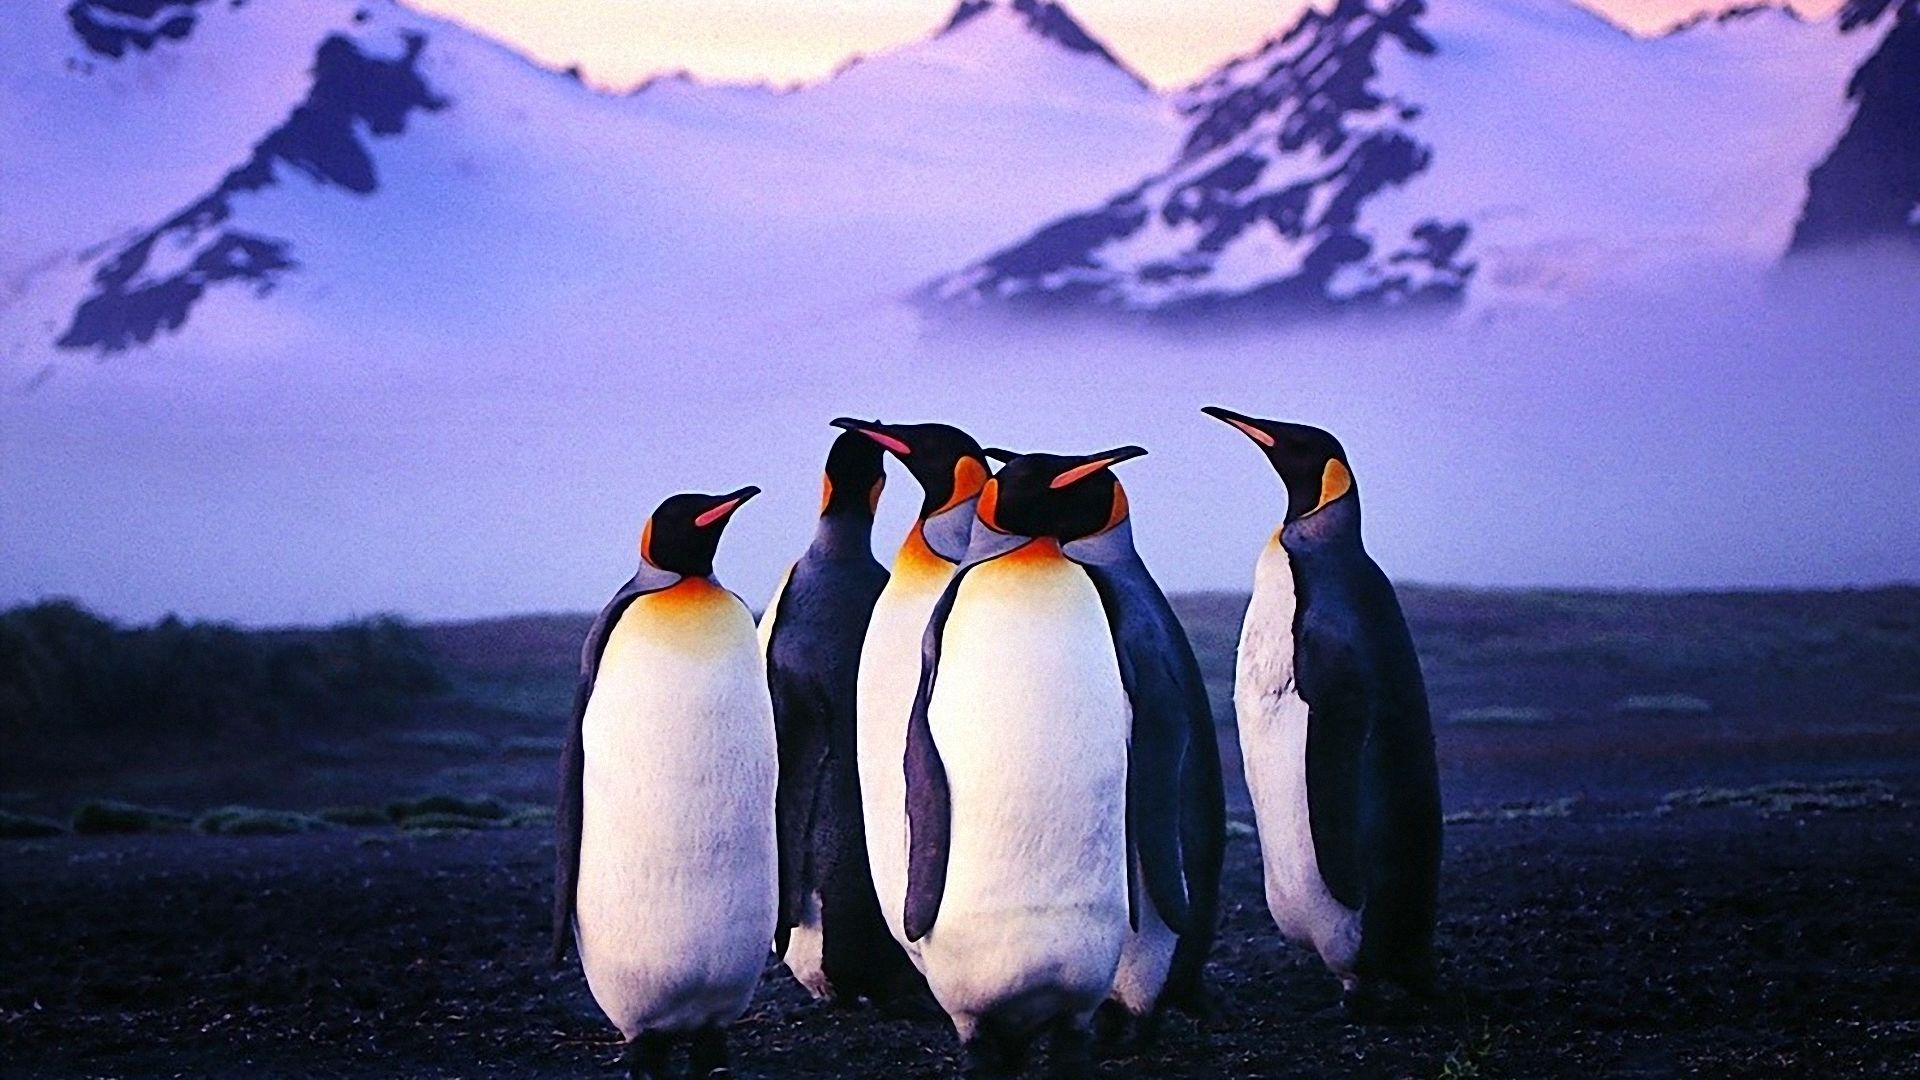 pinguino sfondo del desktop,pinguino,uccello incapace di volare,pinguino reale,uccello,pinguino imperatore